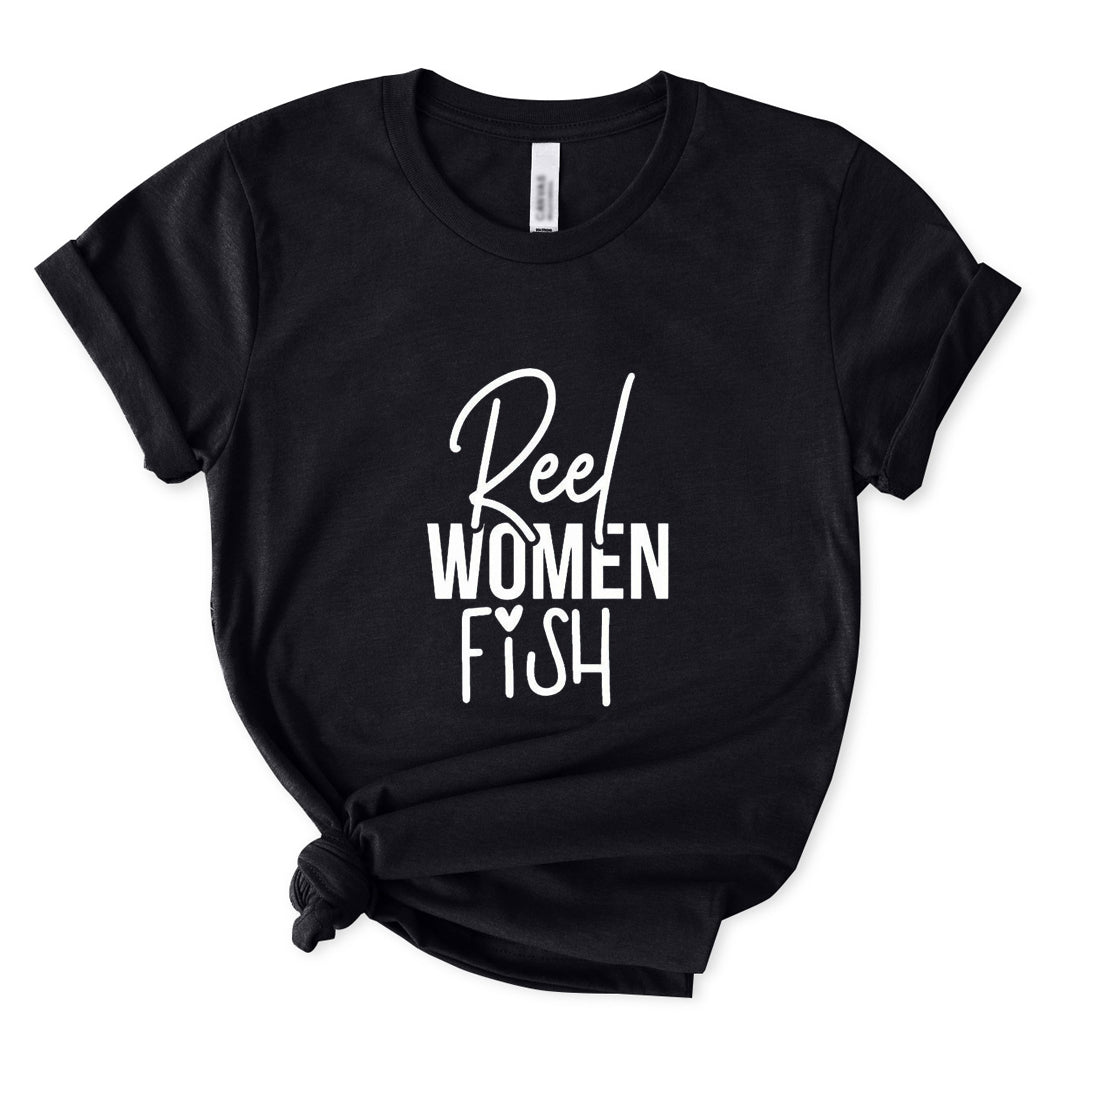 Reel Women Fish T-Shirt for Women